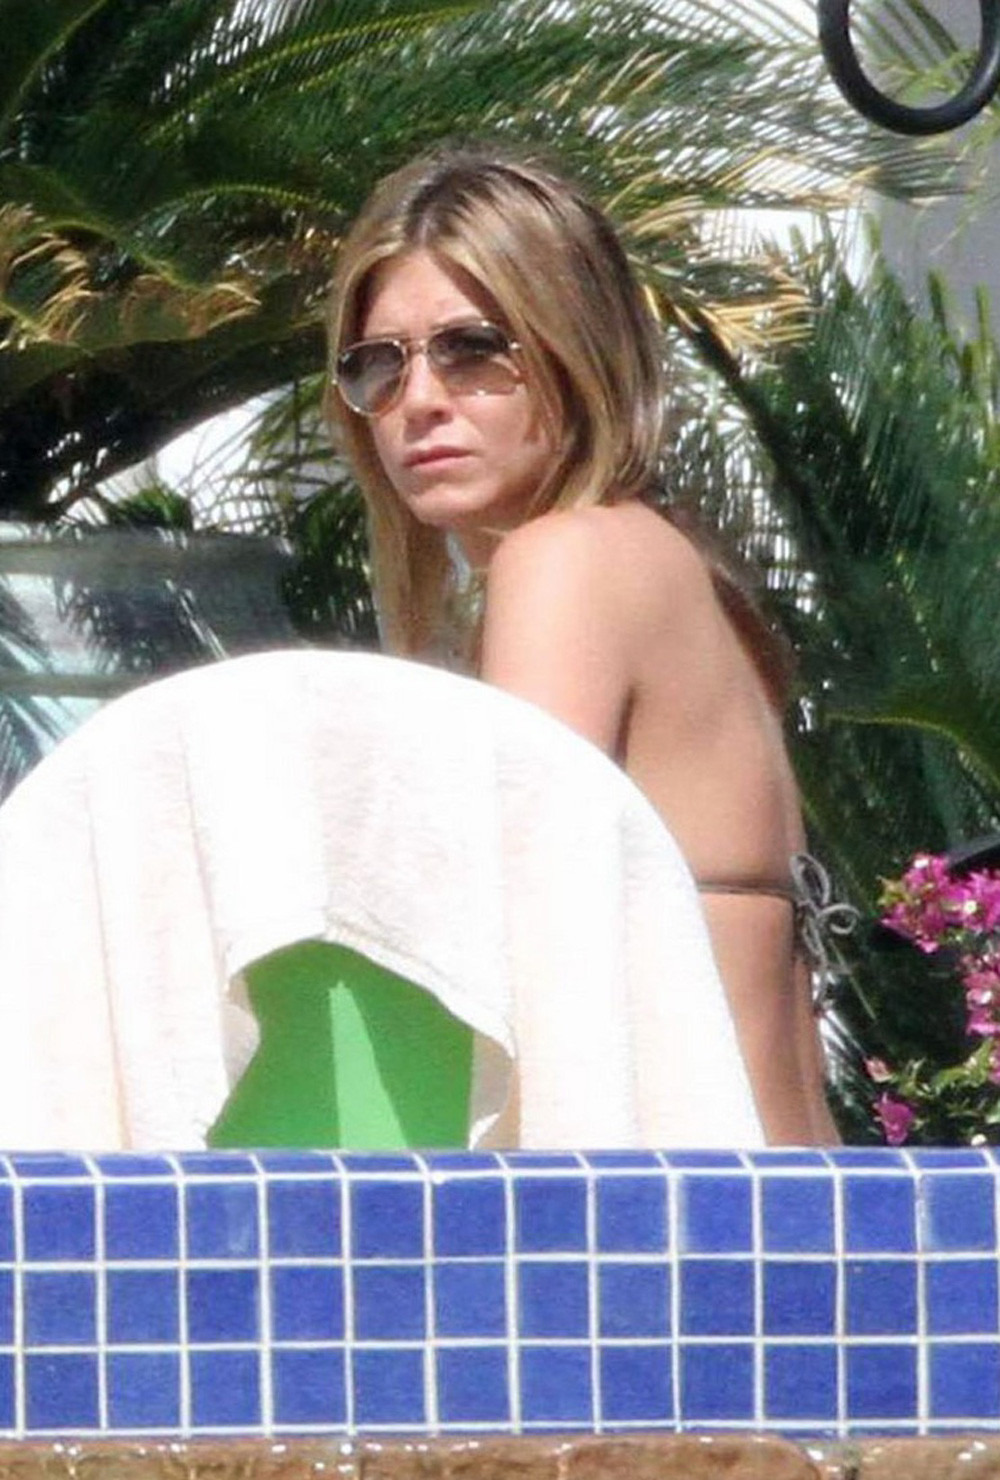 Jennifer Aniston upskirt and perfect cleavage #75281138